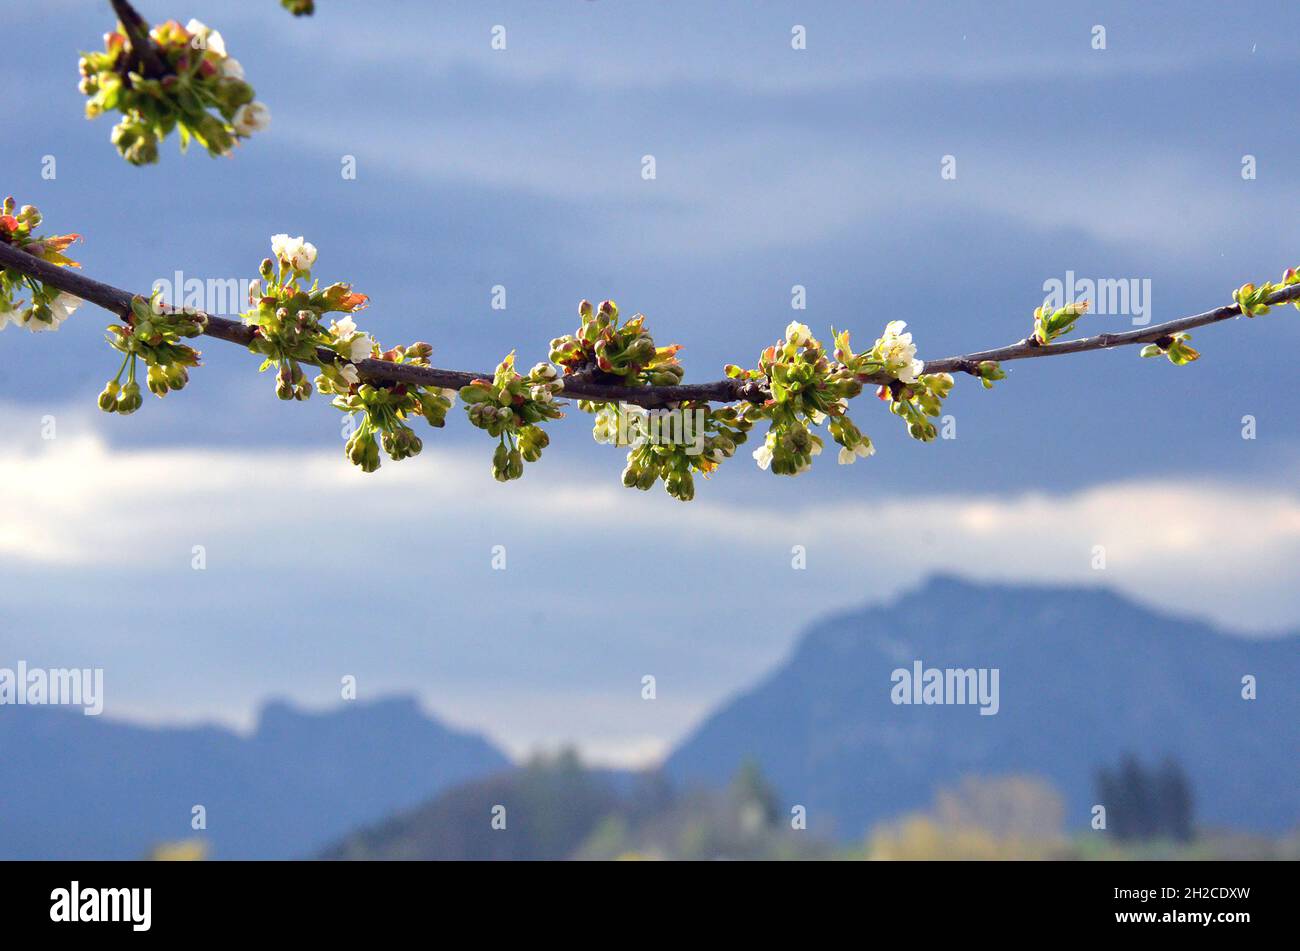 Kirschblüten mit einer Schlechtwetterfront im Hintergrund - Die Kirsche, oft auch Weichsel genannt, ist ein Obstbaum. - Cherry blossoms with a bad wea Stock Photo